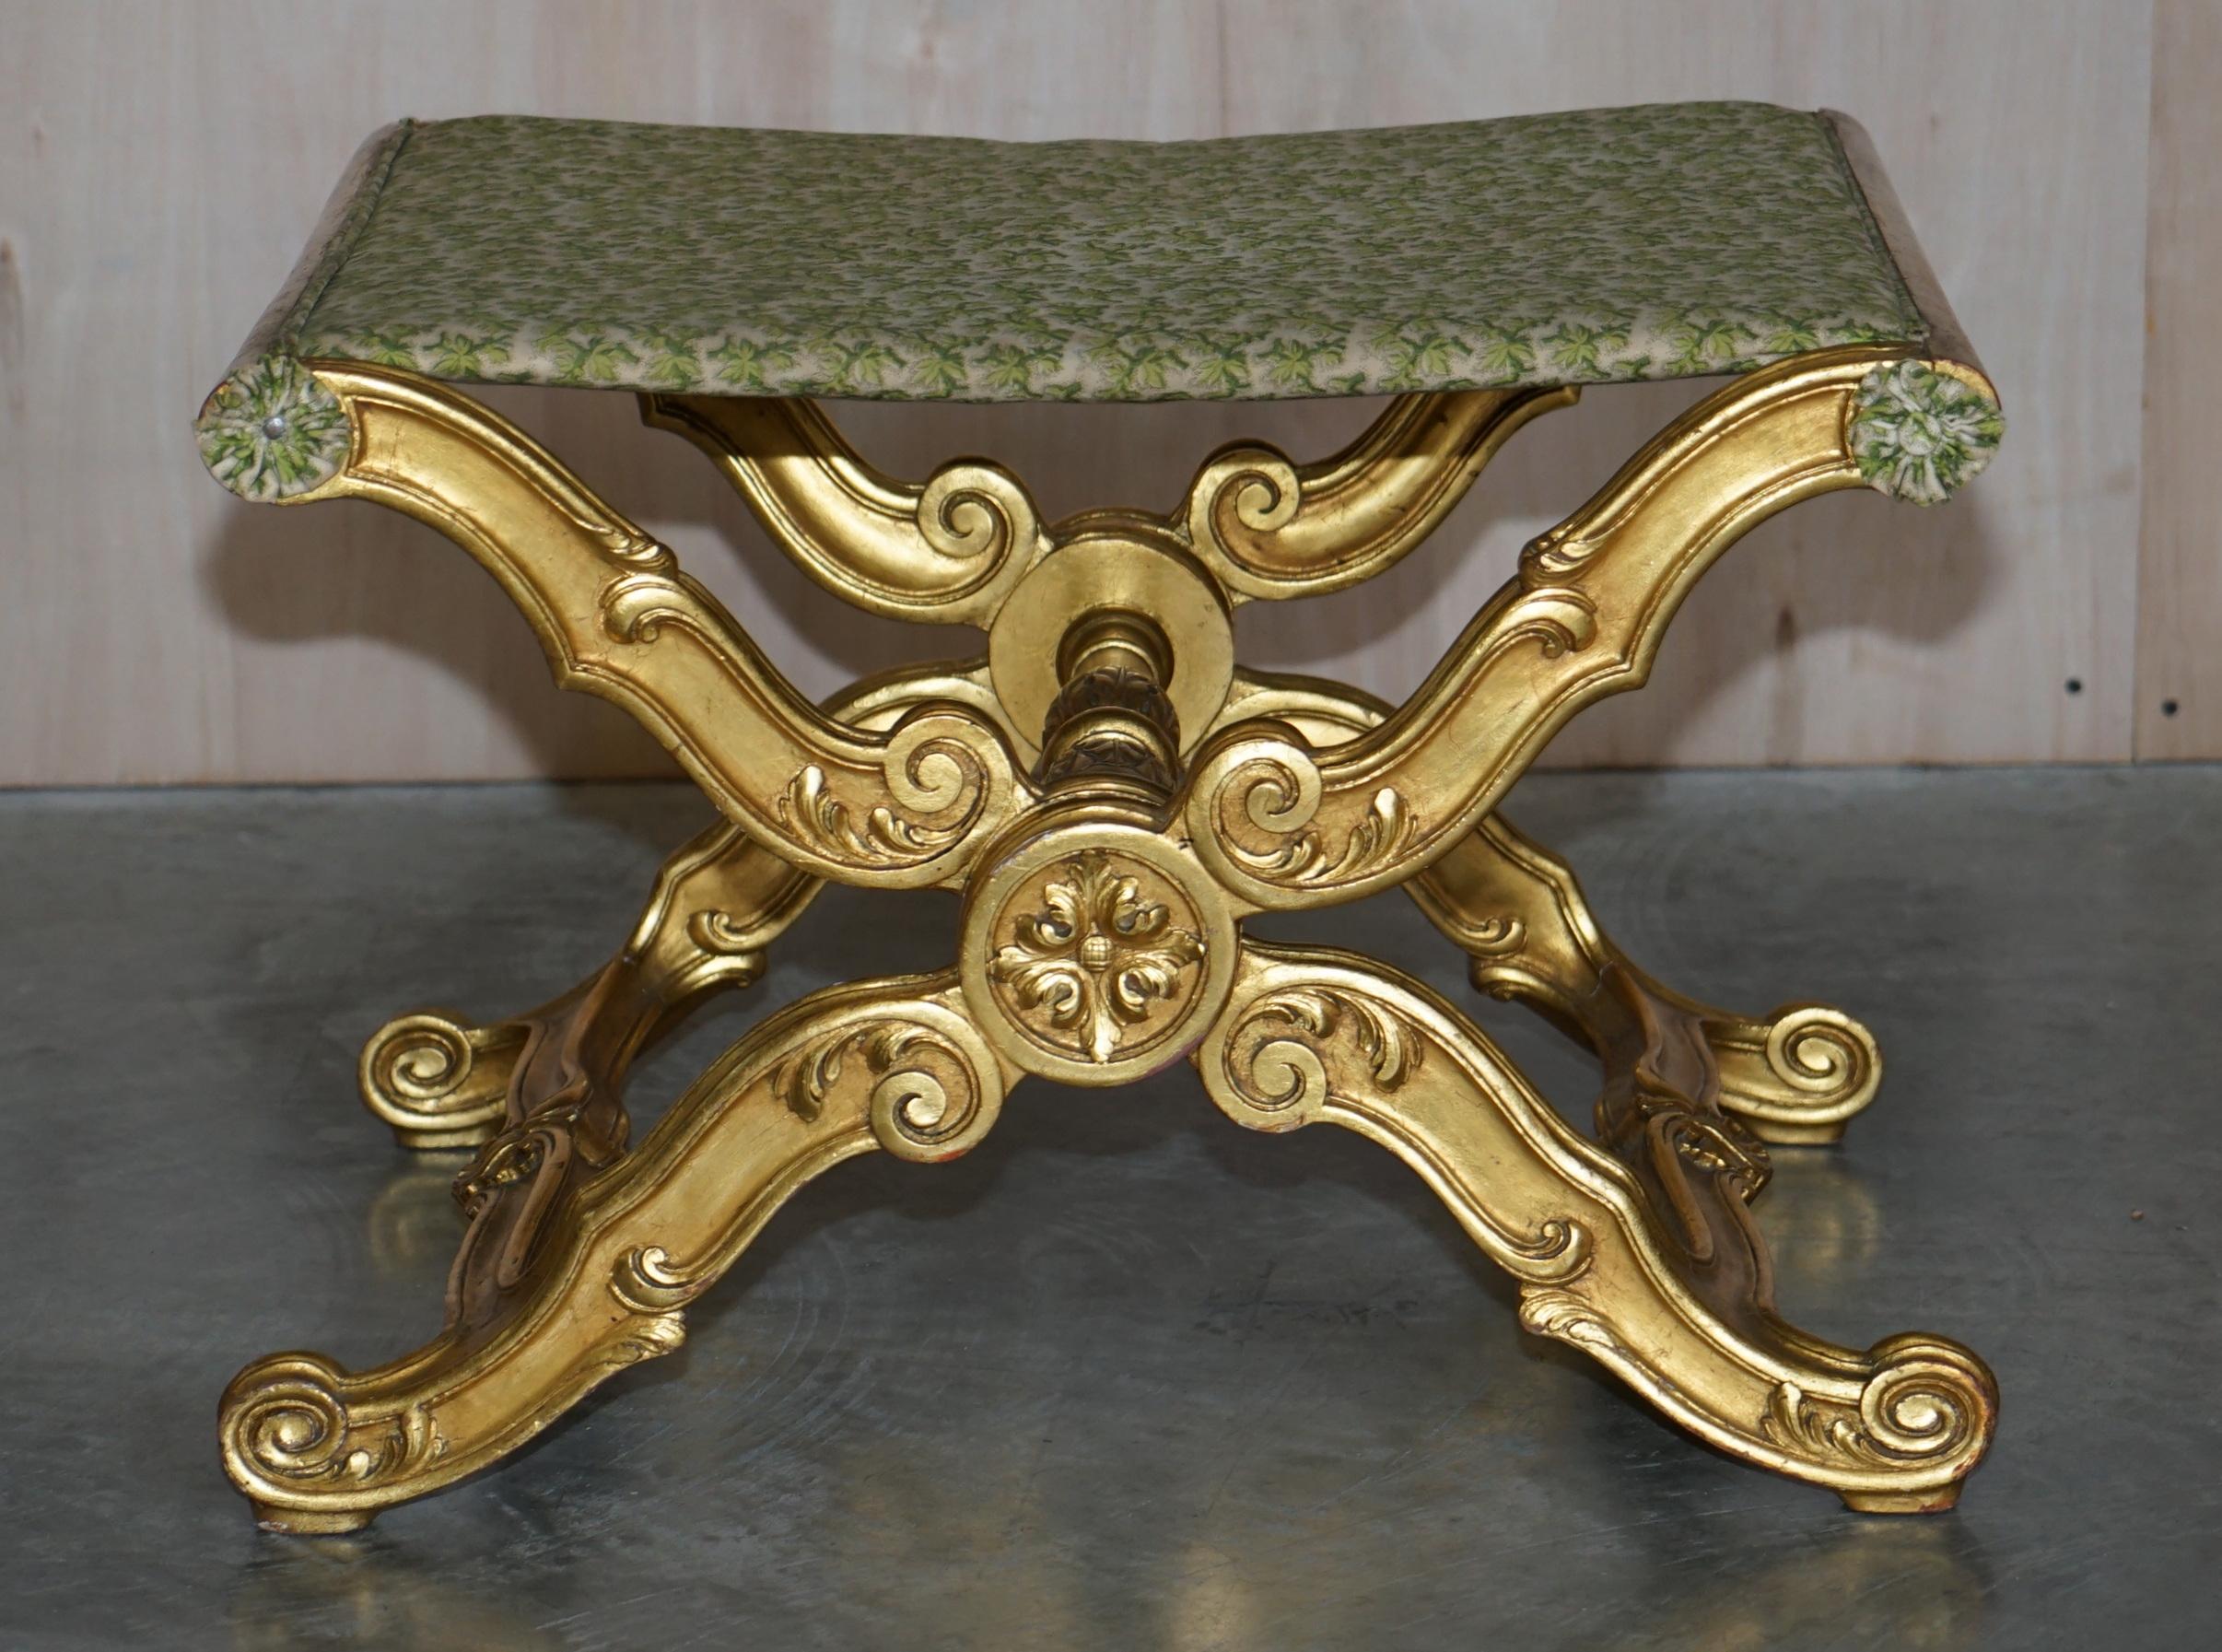 Nous sommes ravis d'offrir à la vente ce charmant tabouret pliant en bois doré du 19ème siècle, sculpté à la main et encadré d'un cadre italien

Une belle pièce bien faite et décorative, qui est en fait assez grande pour son type, la sculpture est